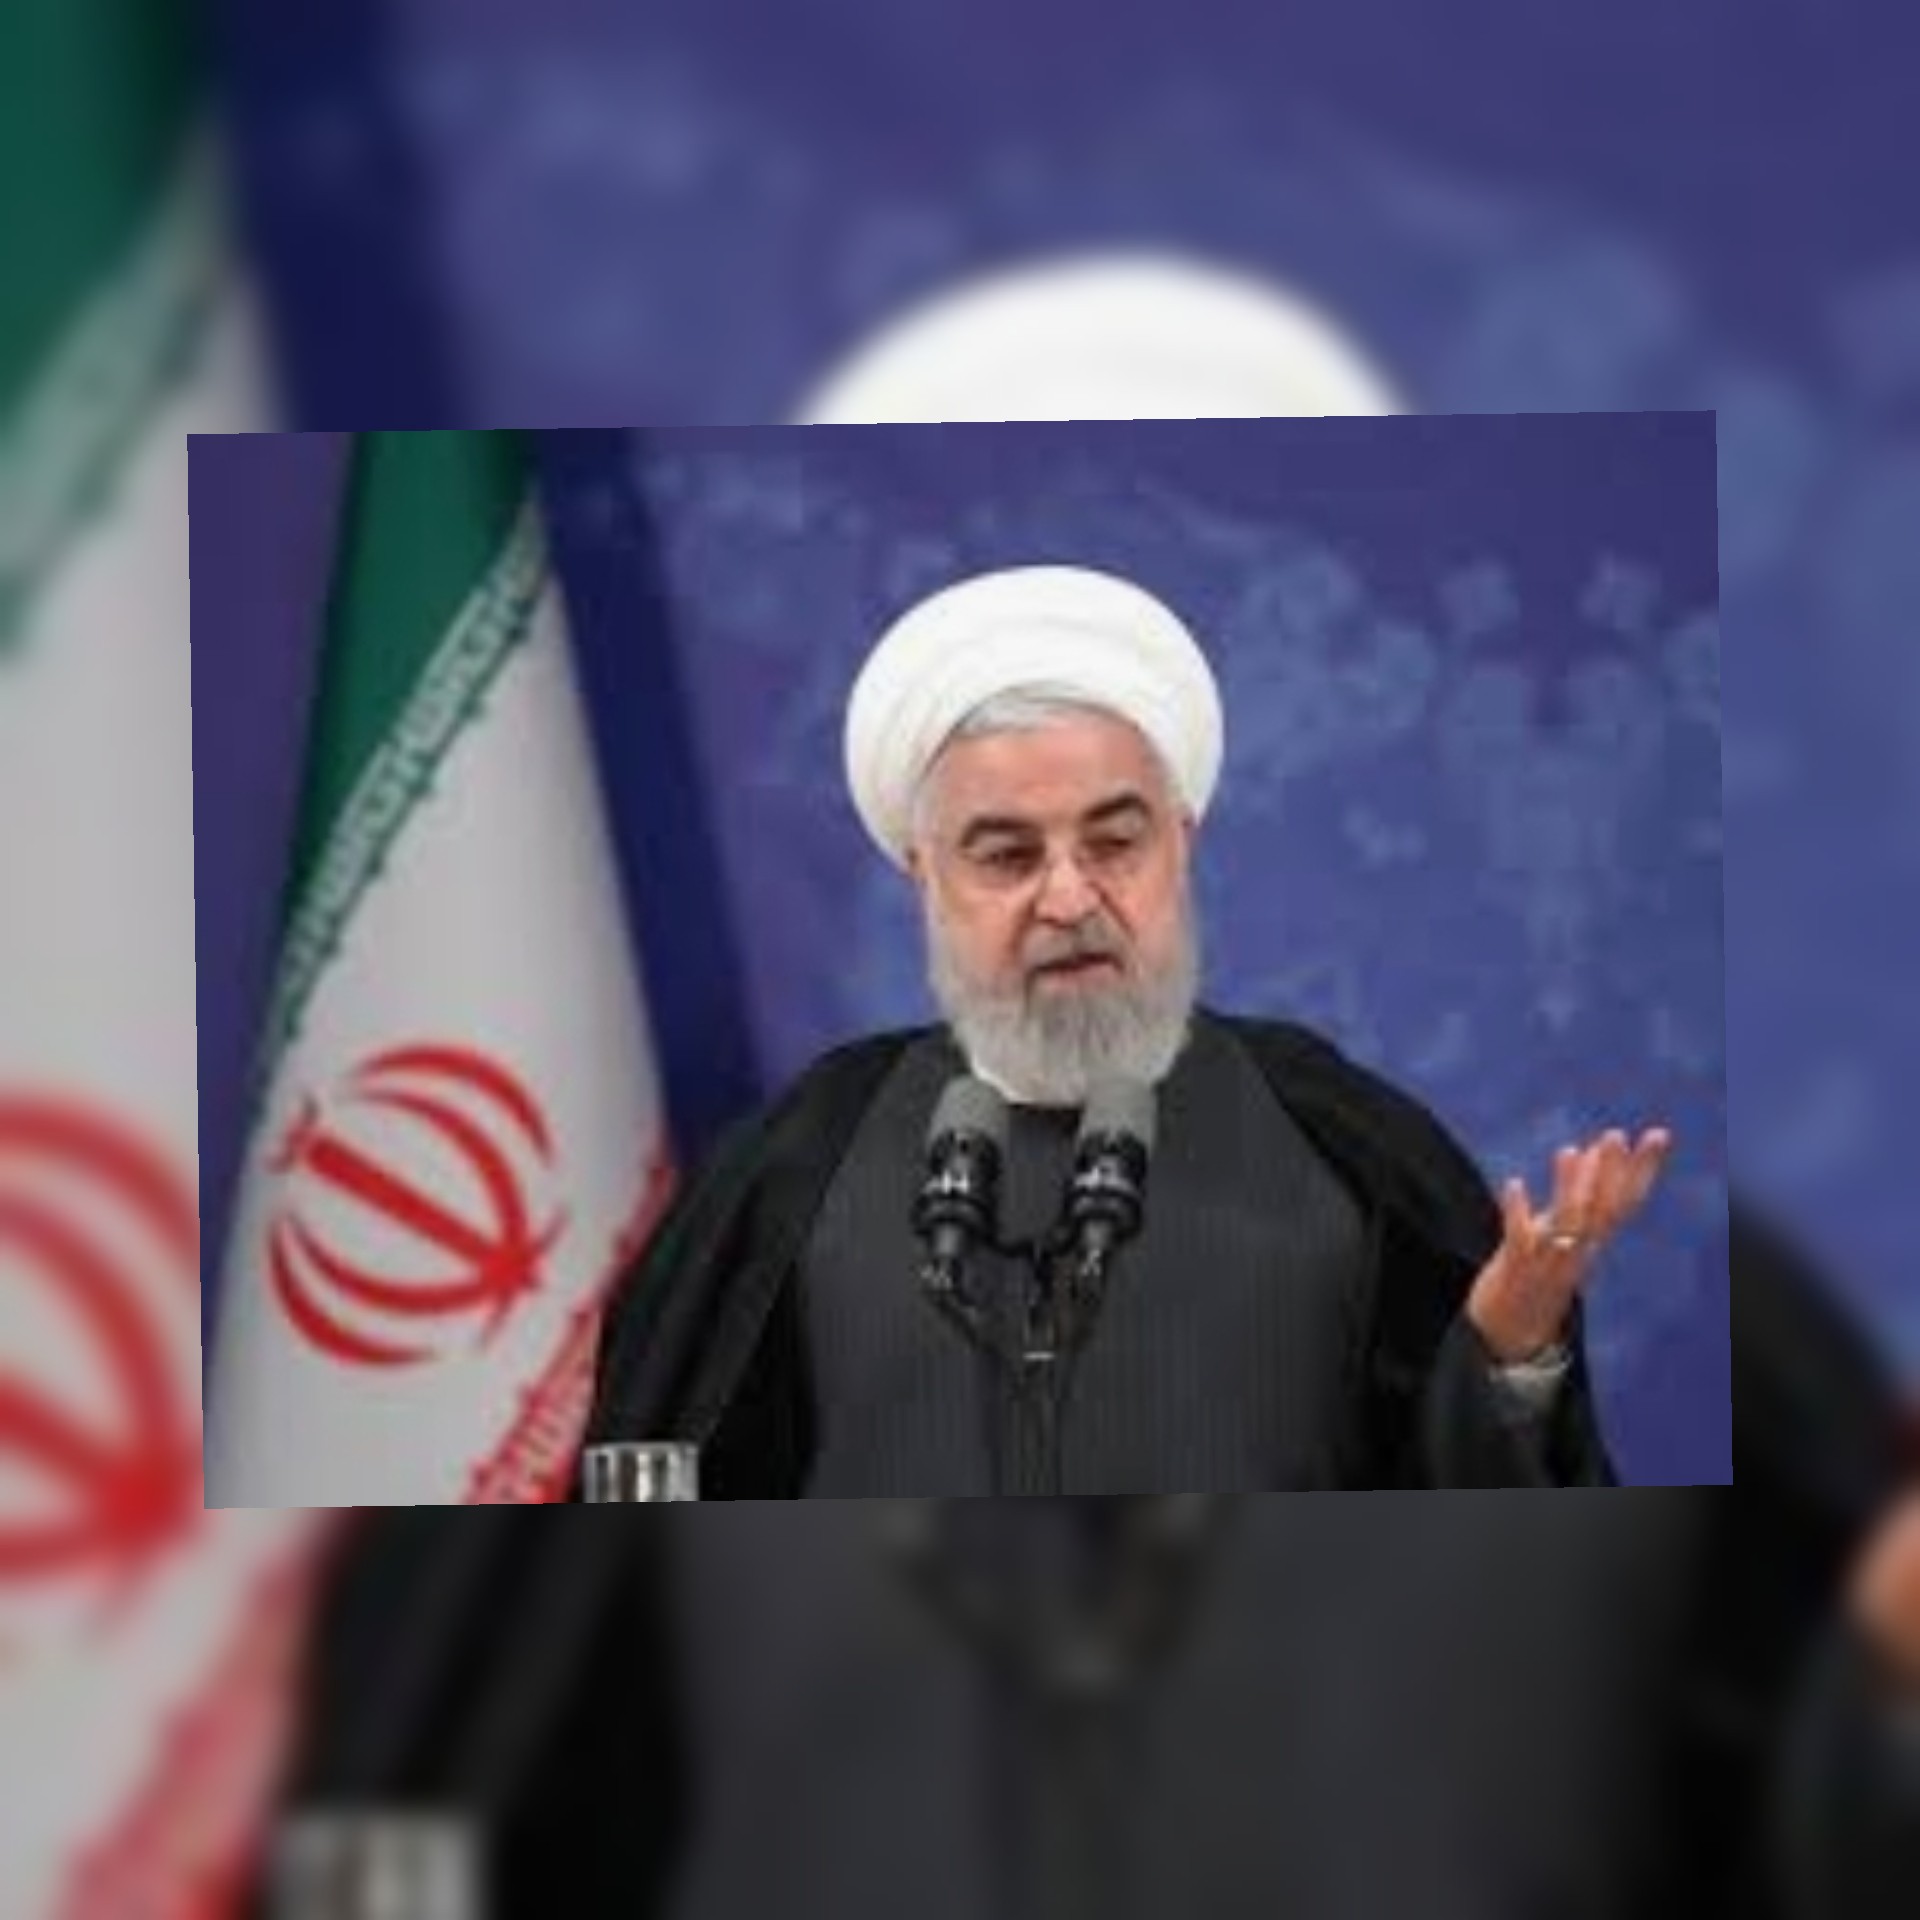 الرئيس روحاني: الإجراءات الأميركية اللاإنسانية وضعت الكثير من العقبات أمام توفير إيران المعدات الطبية اللازمة”.